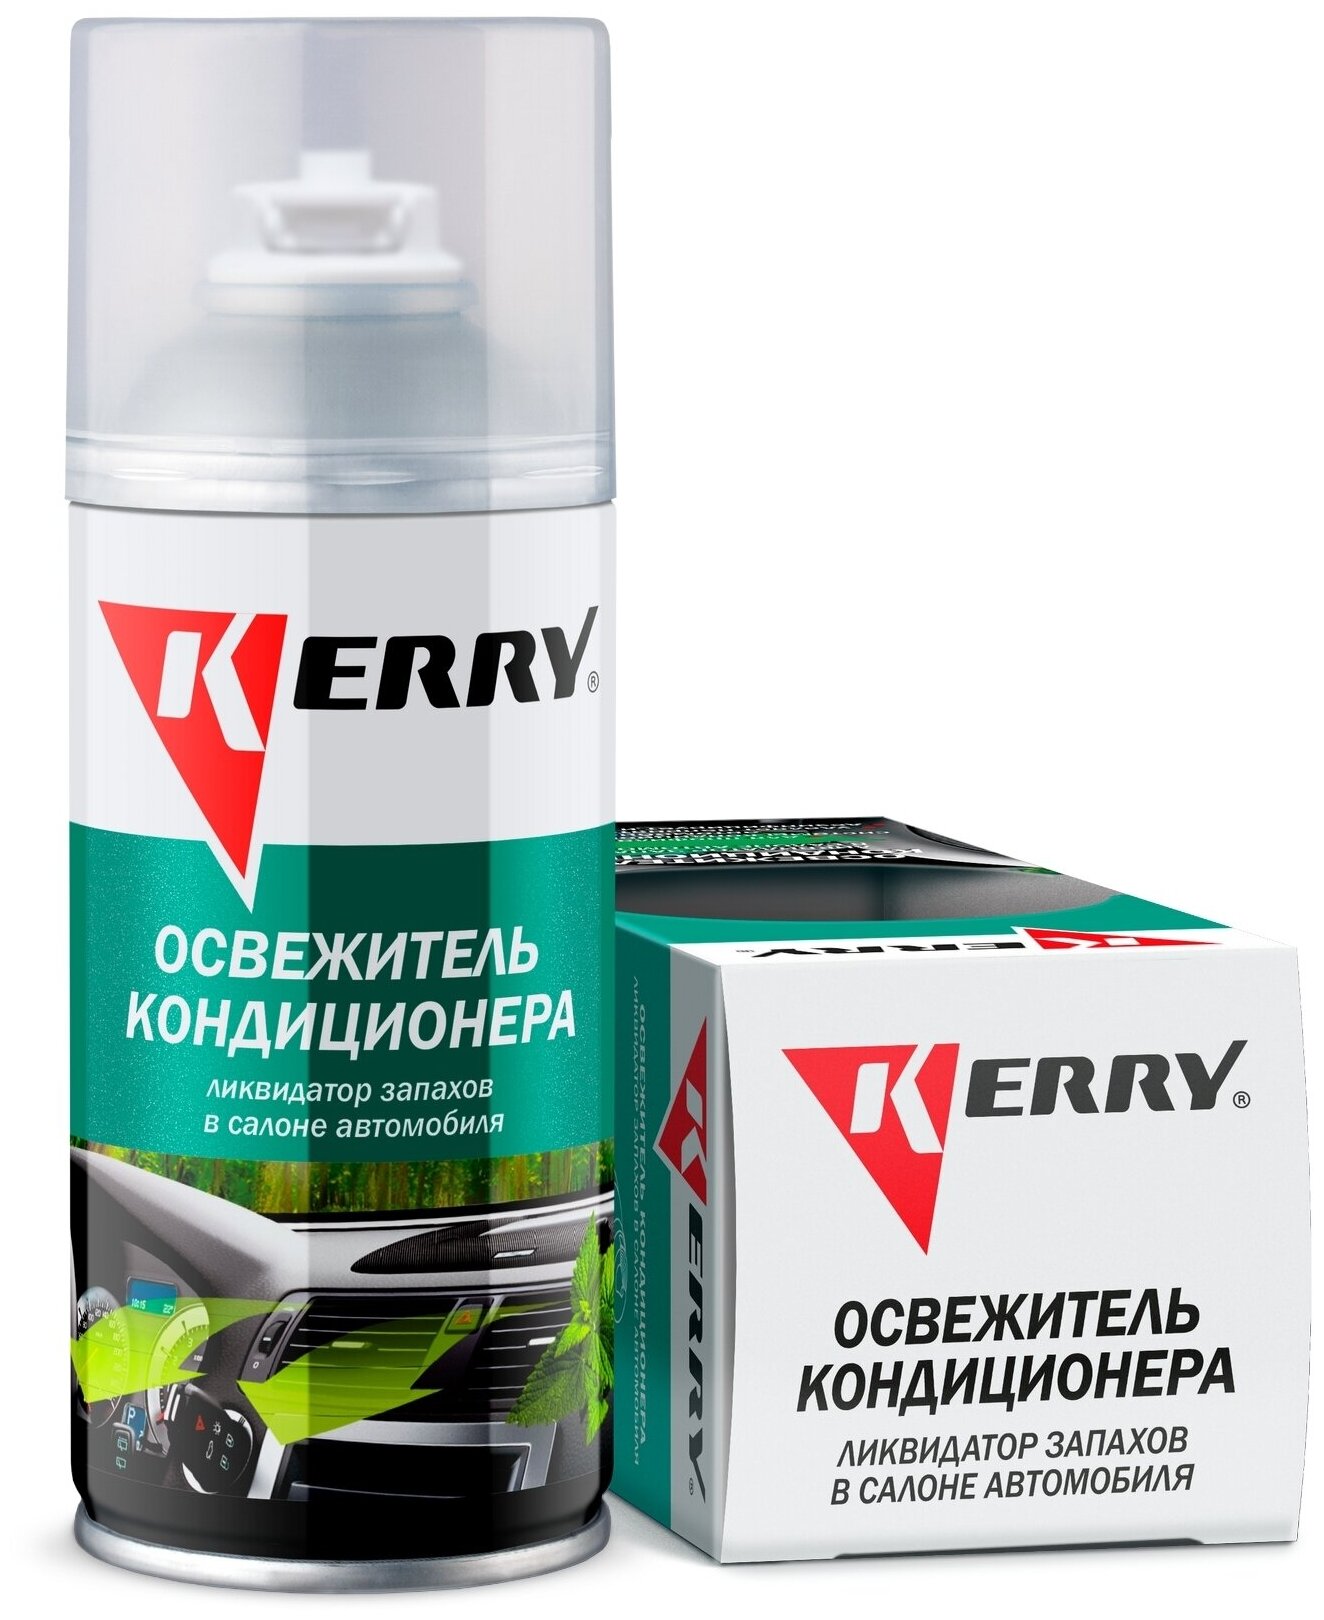 Очиститель кондиционера автомобиля KERRY 210 мл (шашка для кондиционера ликвидатор запахов в салоне автомобиля очиститель кондиционера) KR-917